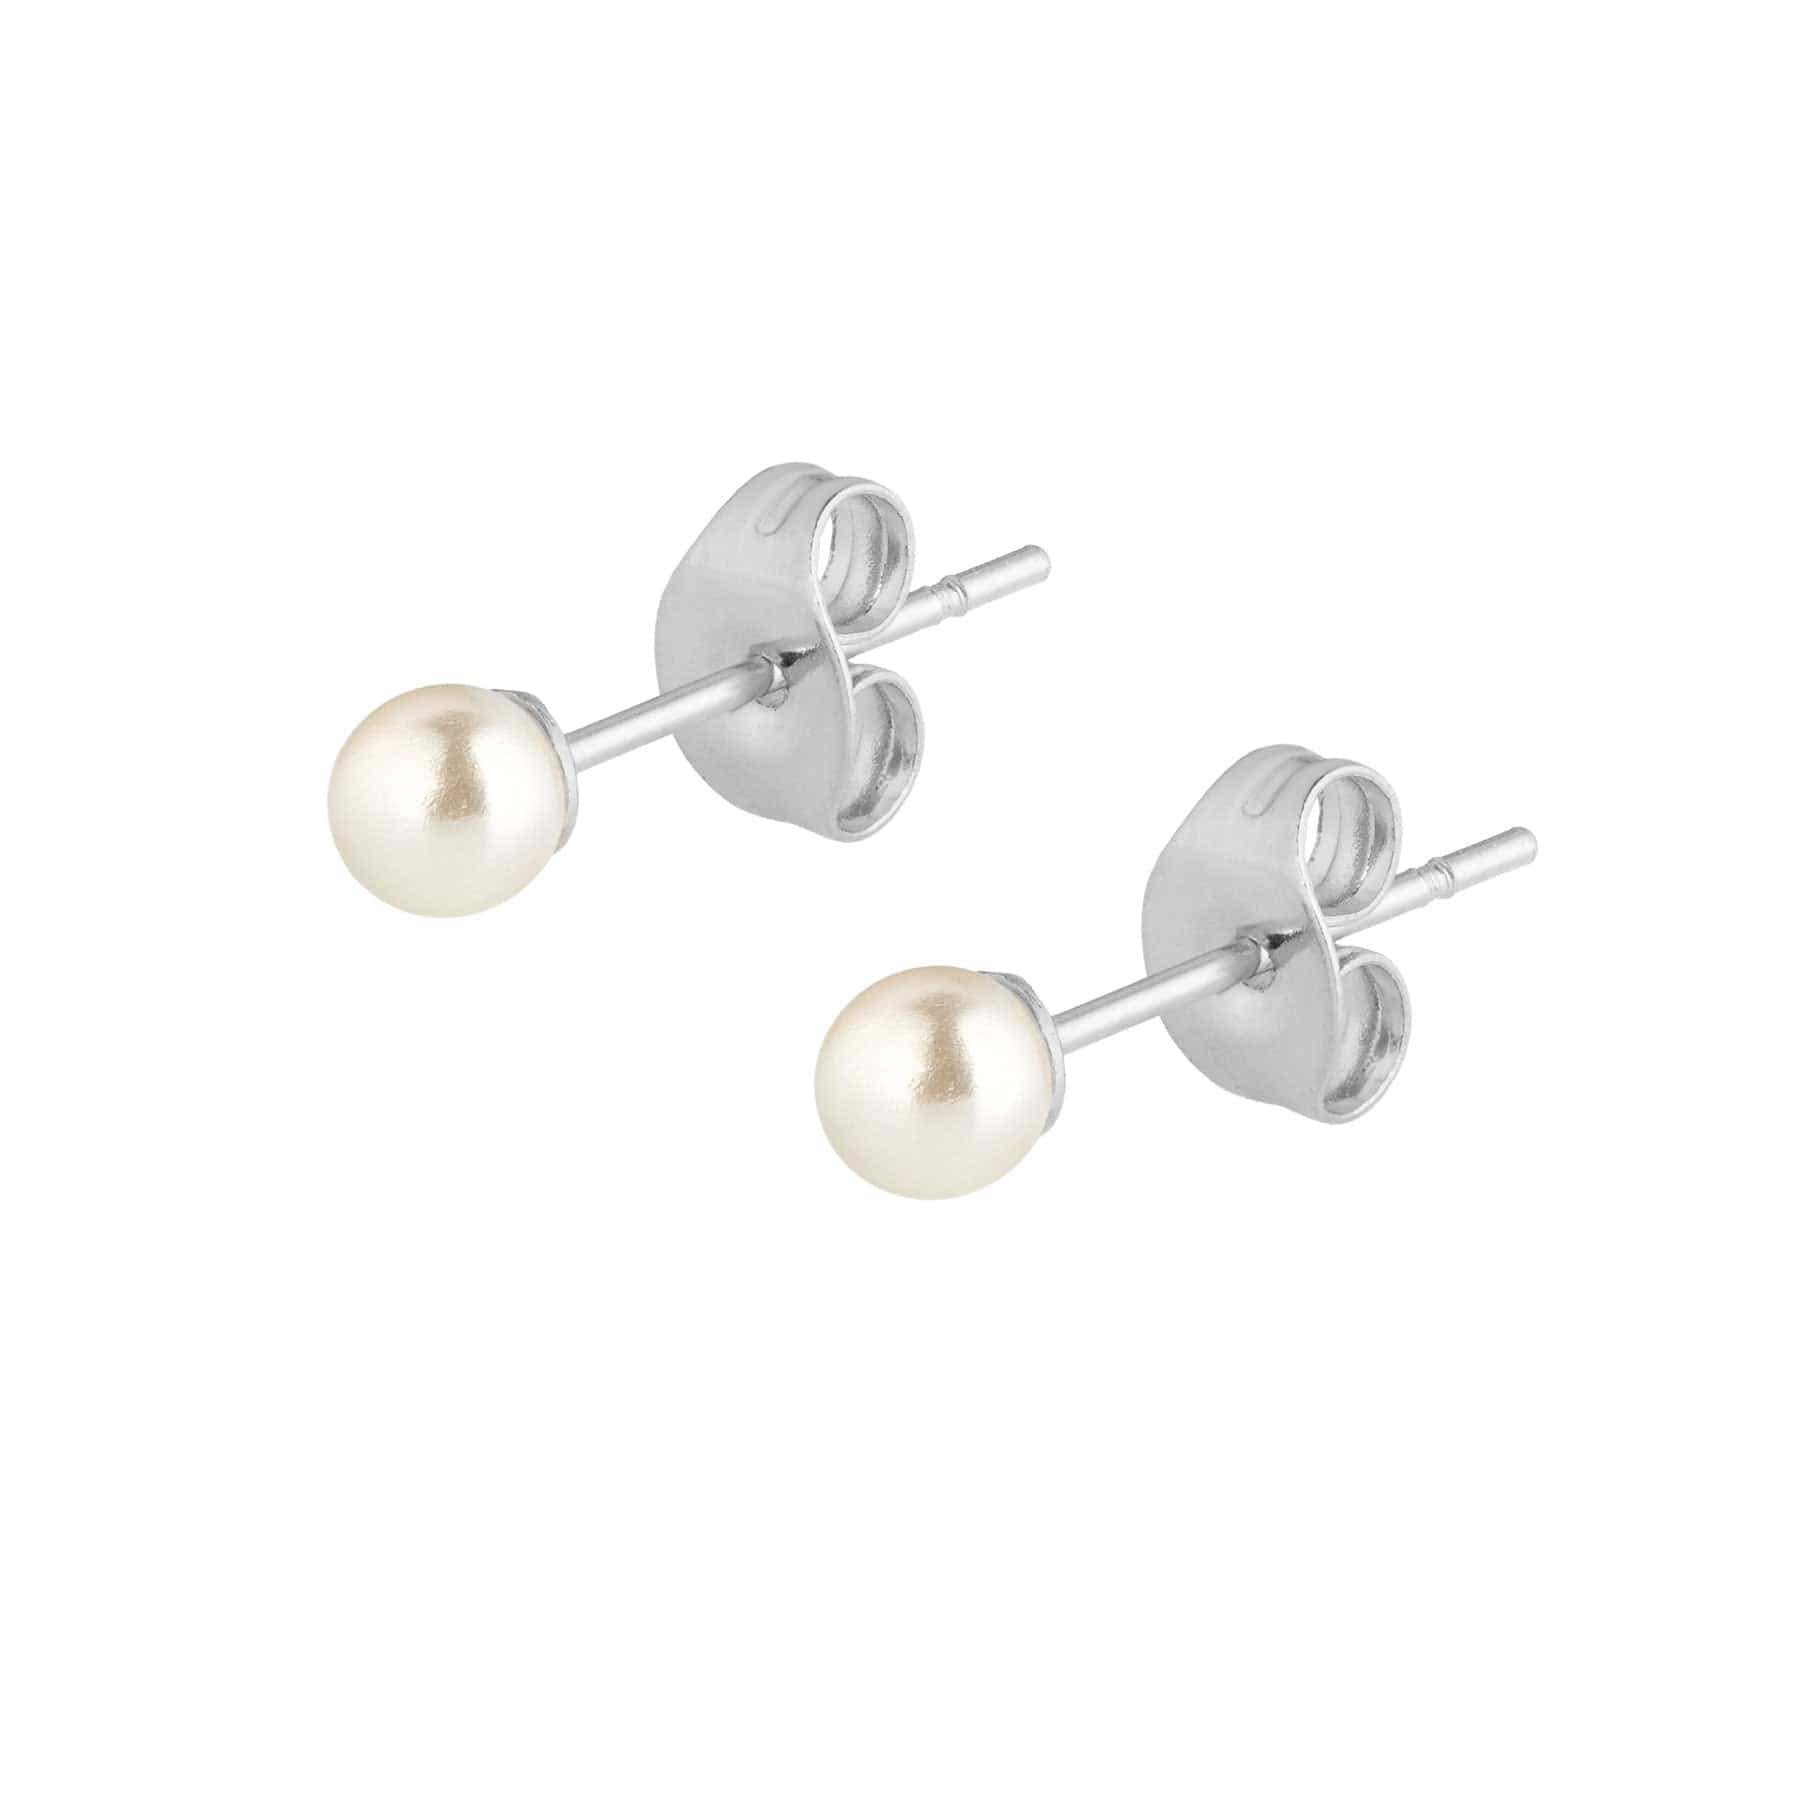 BohoMoon Stainless Steel Mini Pearl Stud Earrings Silver